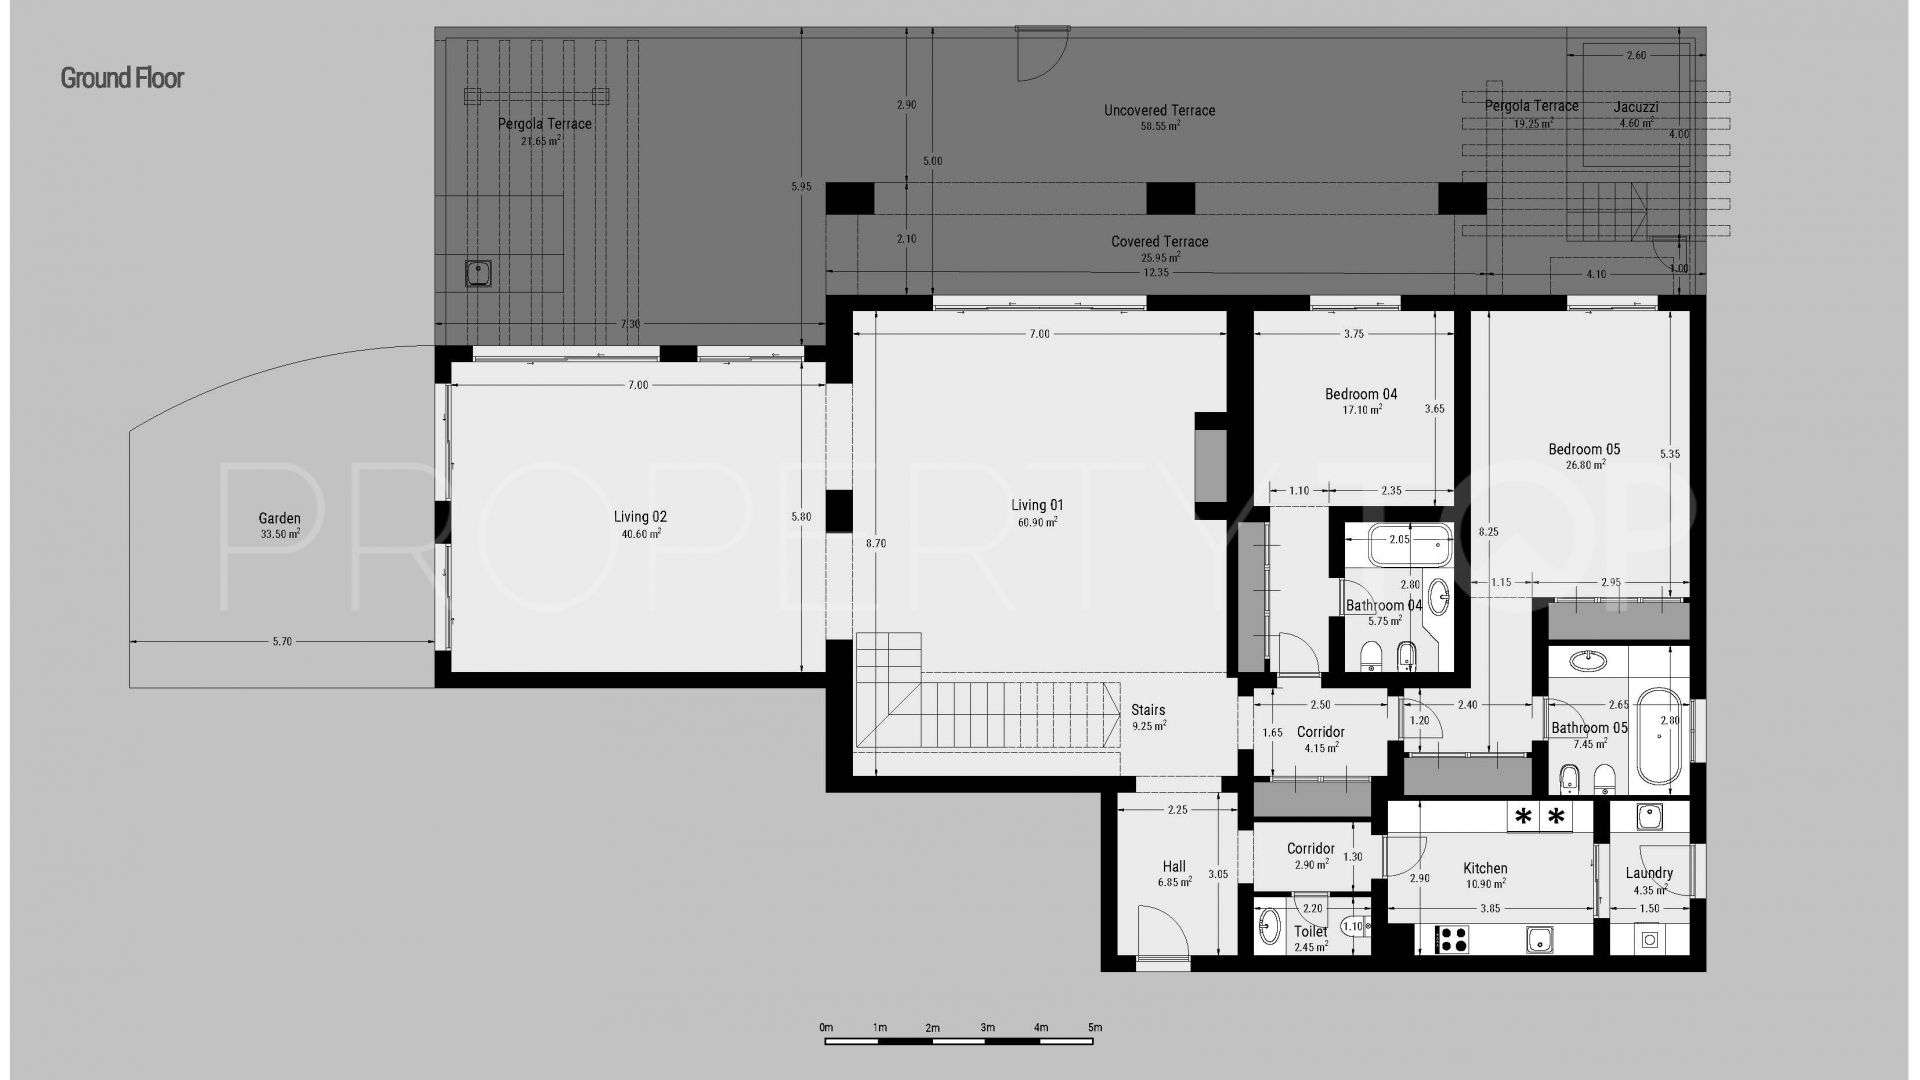 5 bedrooms ground floor duplex in Casa Nova for sale